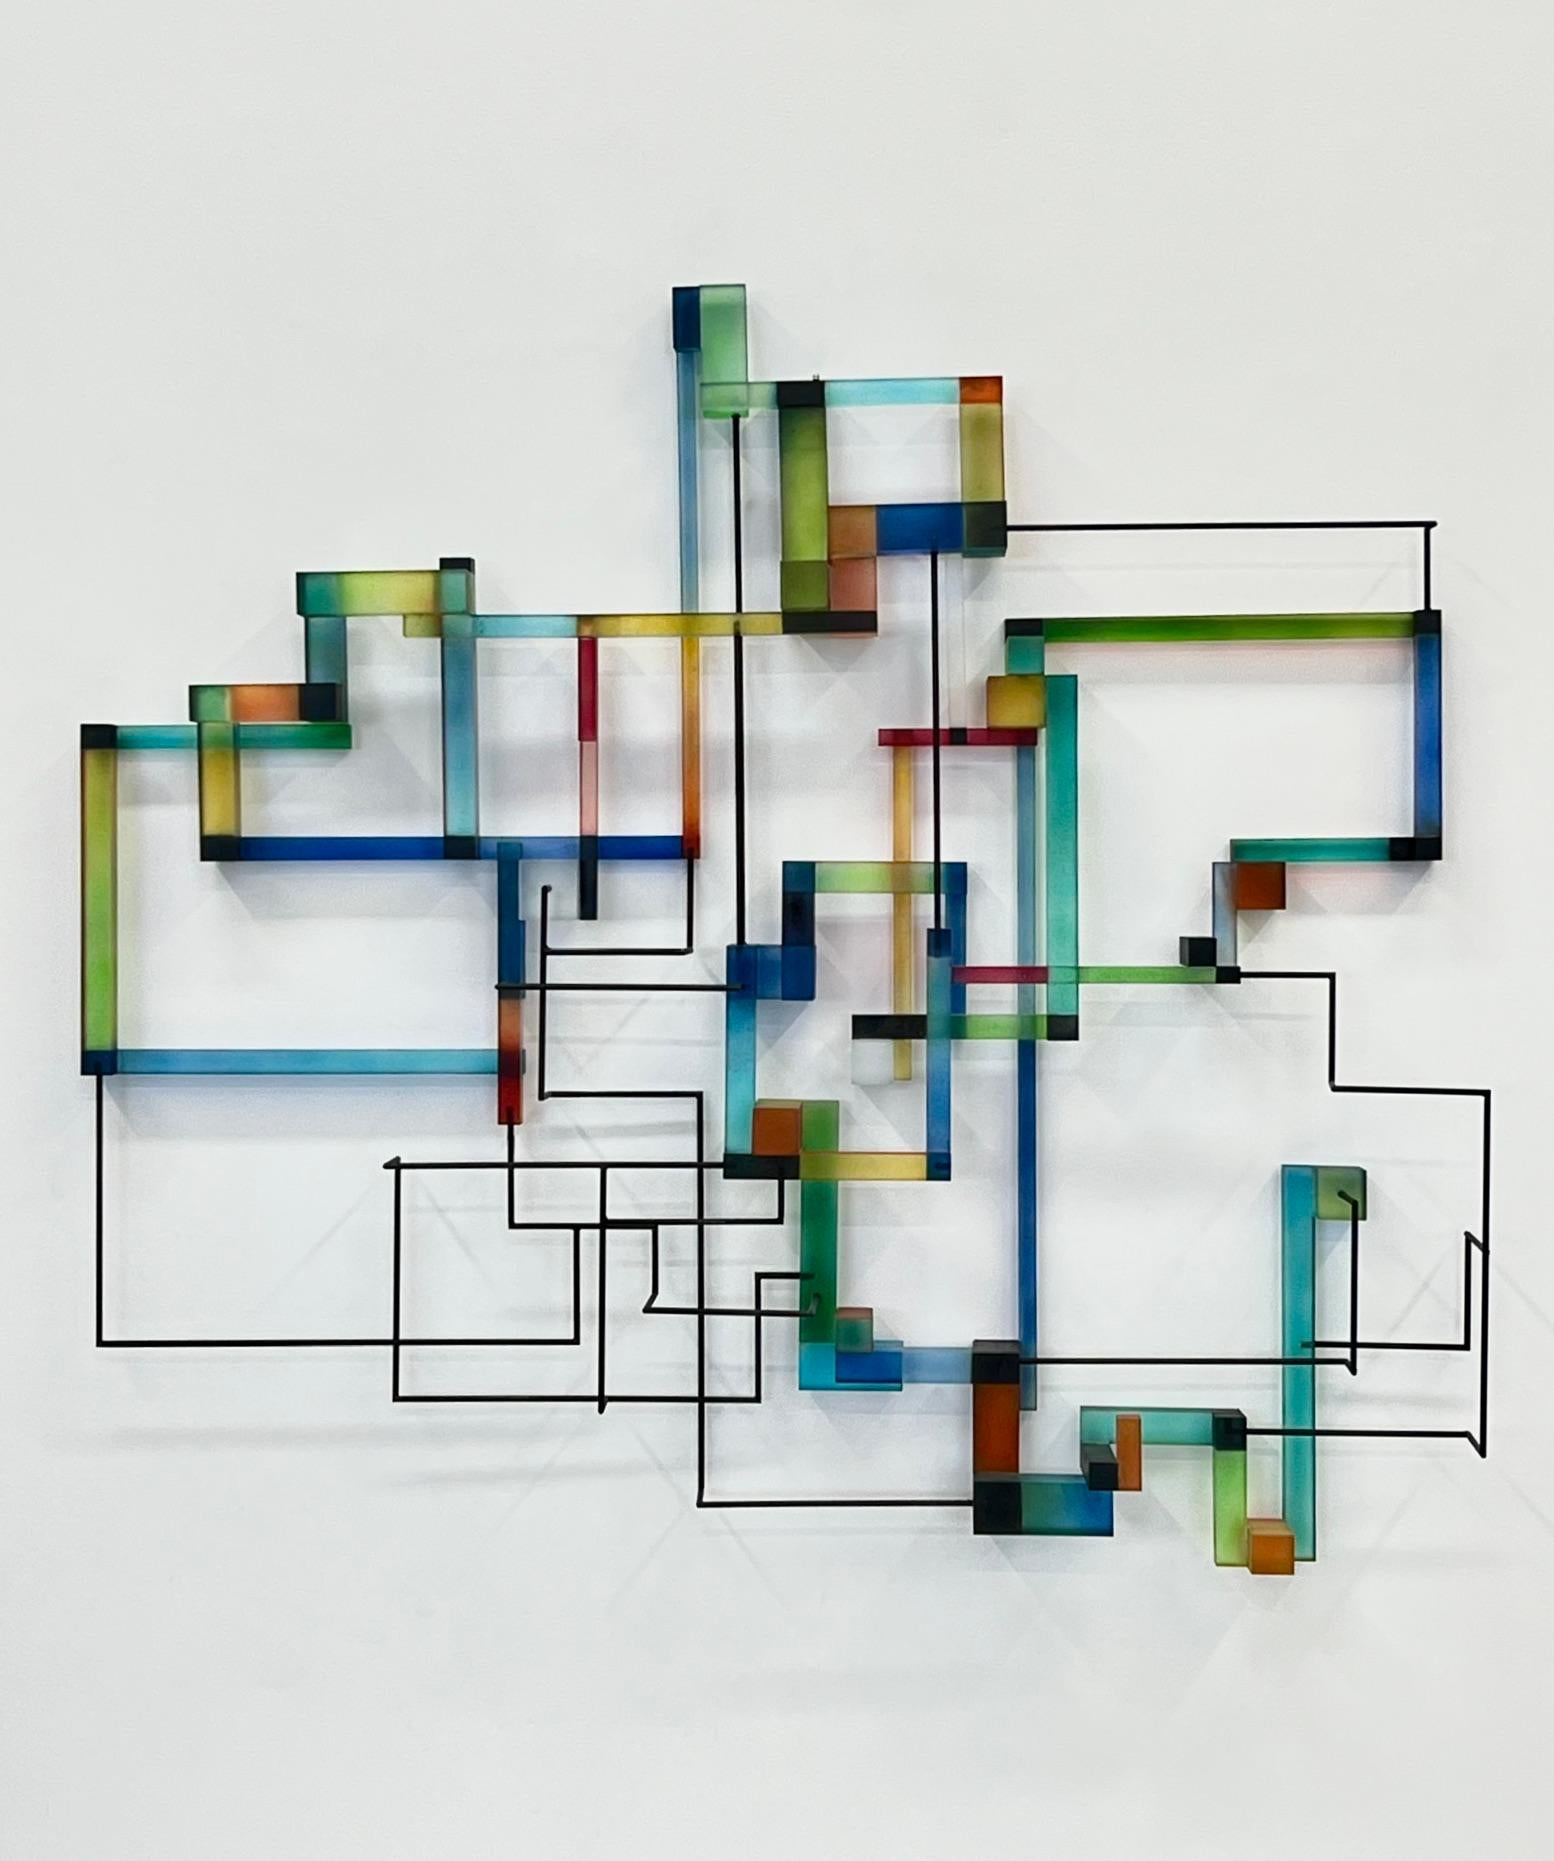 Prozor: zeitgenössische moderne abstrakte geometrische Skulptur